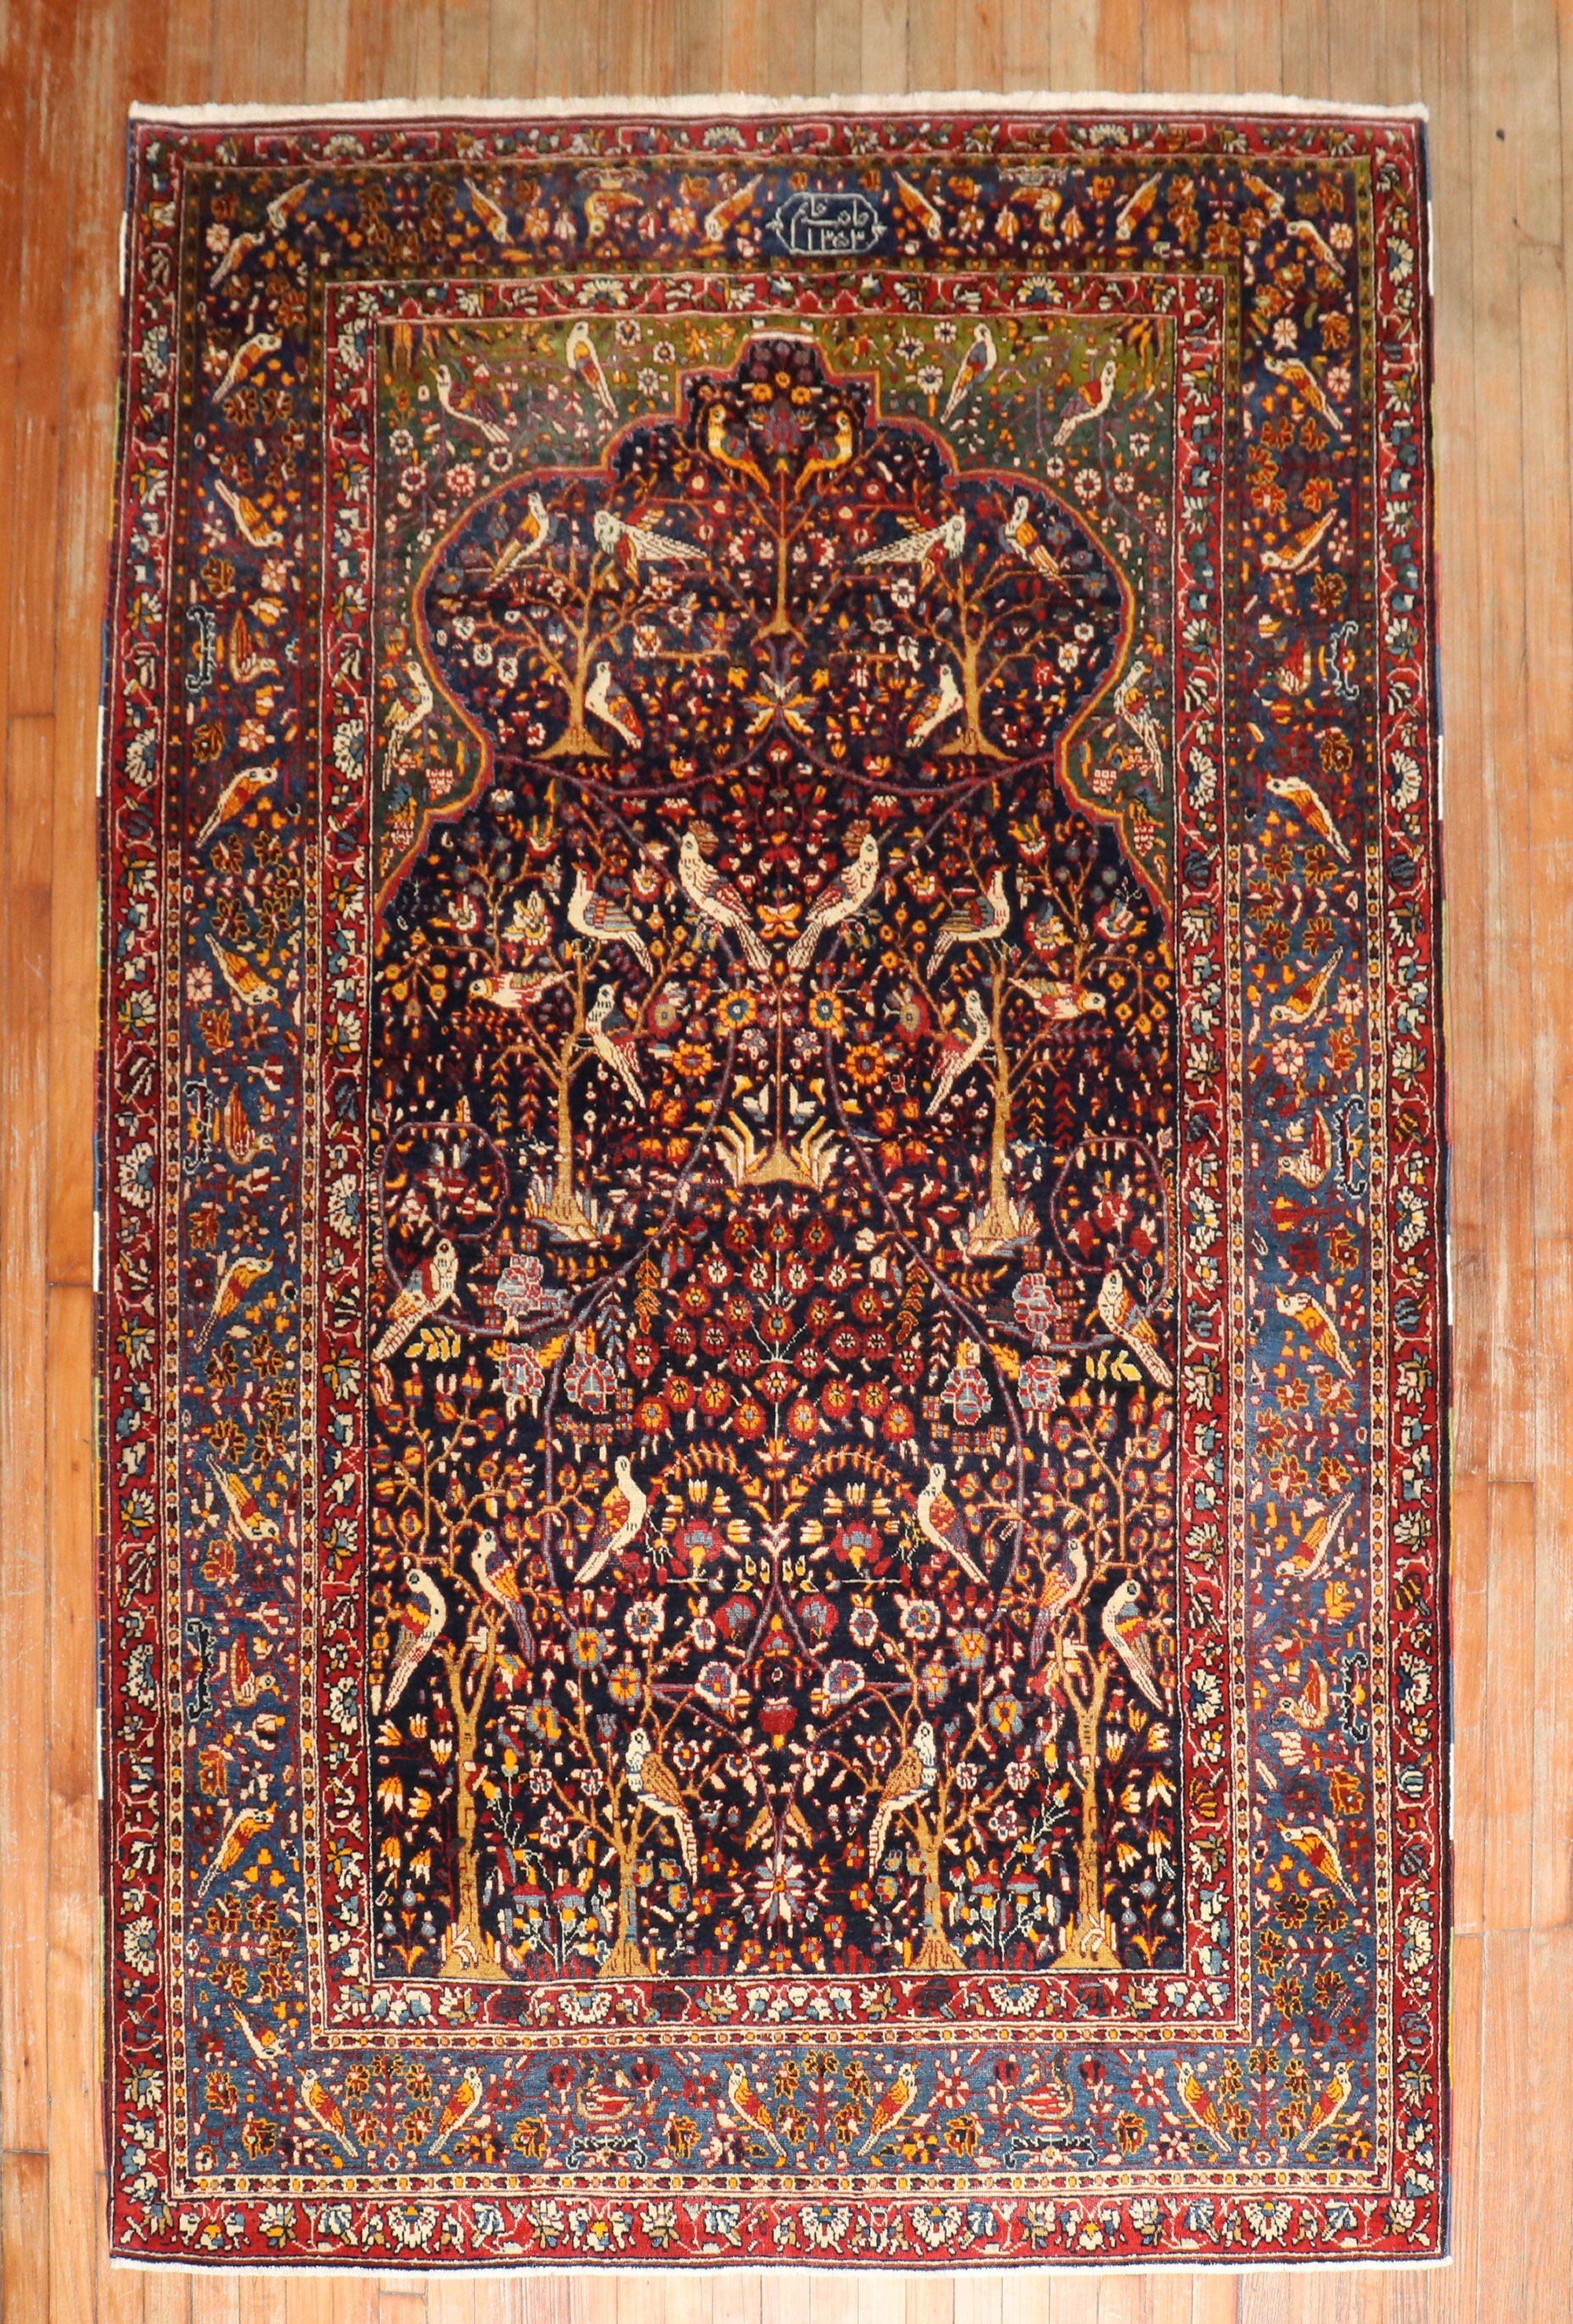 Eine frühe 20. Jahrhundert Persisch Persisch Bachtiari Pictorial unterzeichnet Gebetsteppich. Leicht genug, um auch als Wandobjekt verwendet zu werden

Maße: 5'5'' x 8'2''.

 